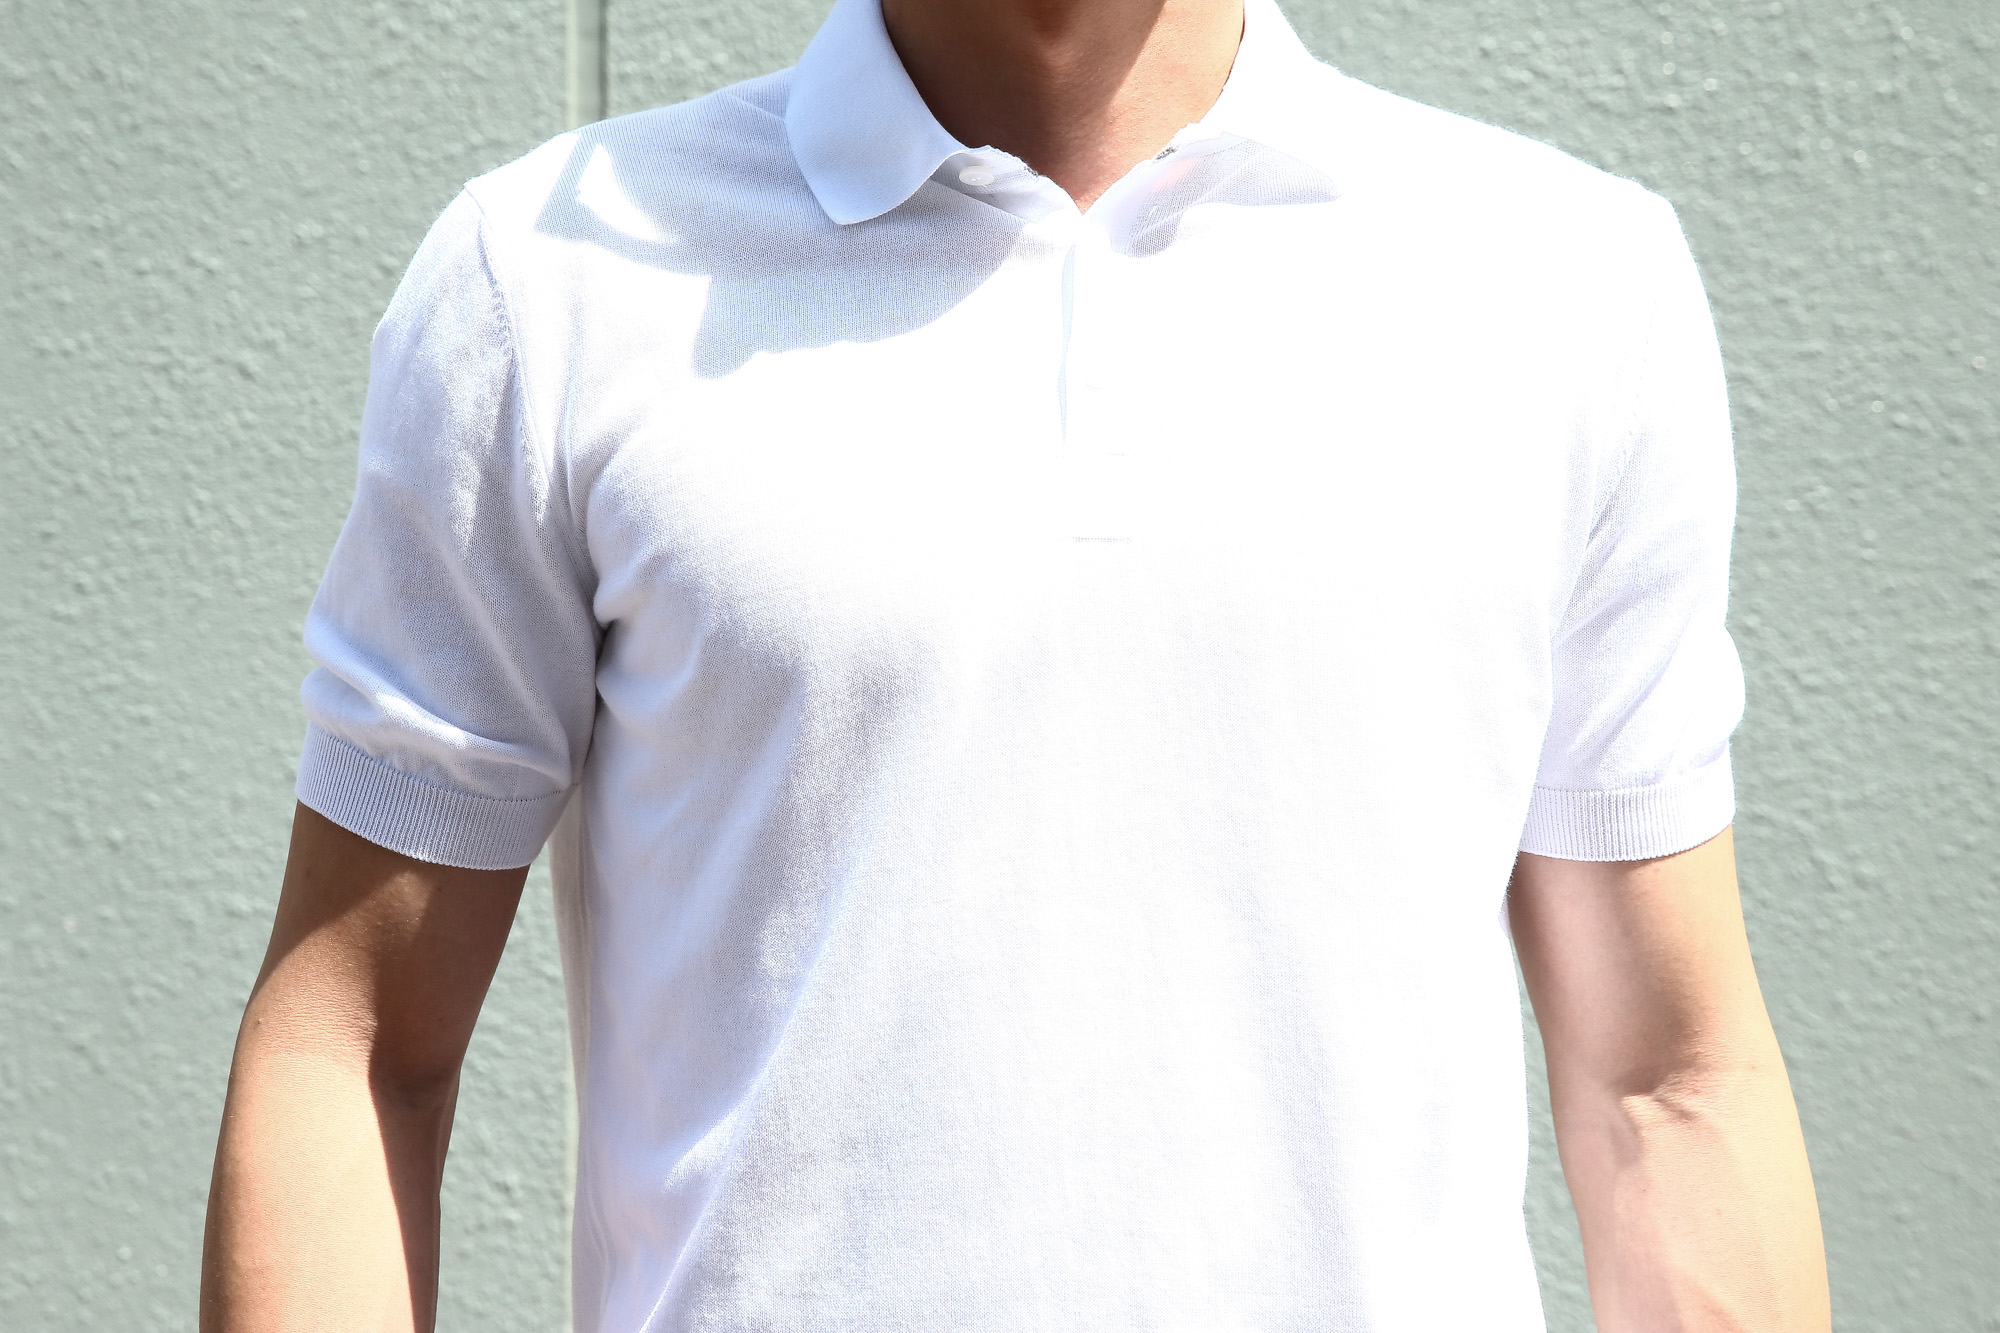 Gran Sasso (グランサッソ) Fresh Cotton Polo Shirt (フレッシュコットン ポロシャツ) FRESH COTTON (フレッシュコットン) コットン ニット ポロシャツ WHITE (ホワイト・002) made in italy (イタリア製) 2018 春夏新作 gransasso 愛知 名古屋 Alto e Diritto アルト エ デリット ニットポロ